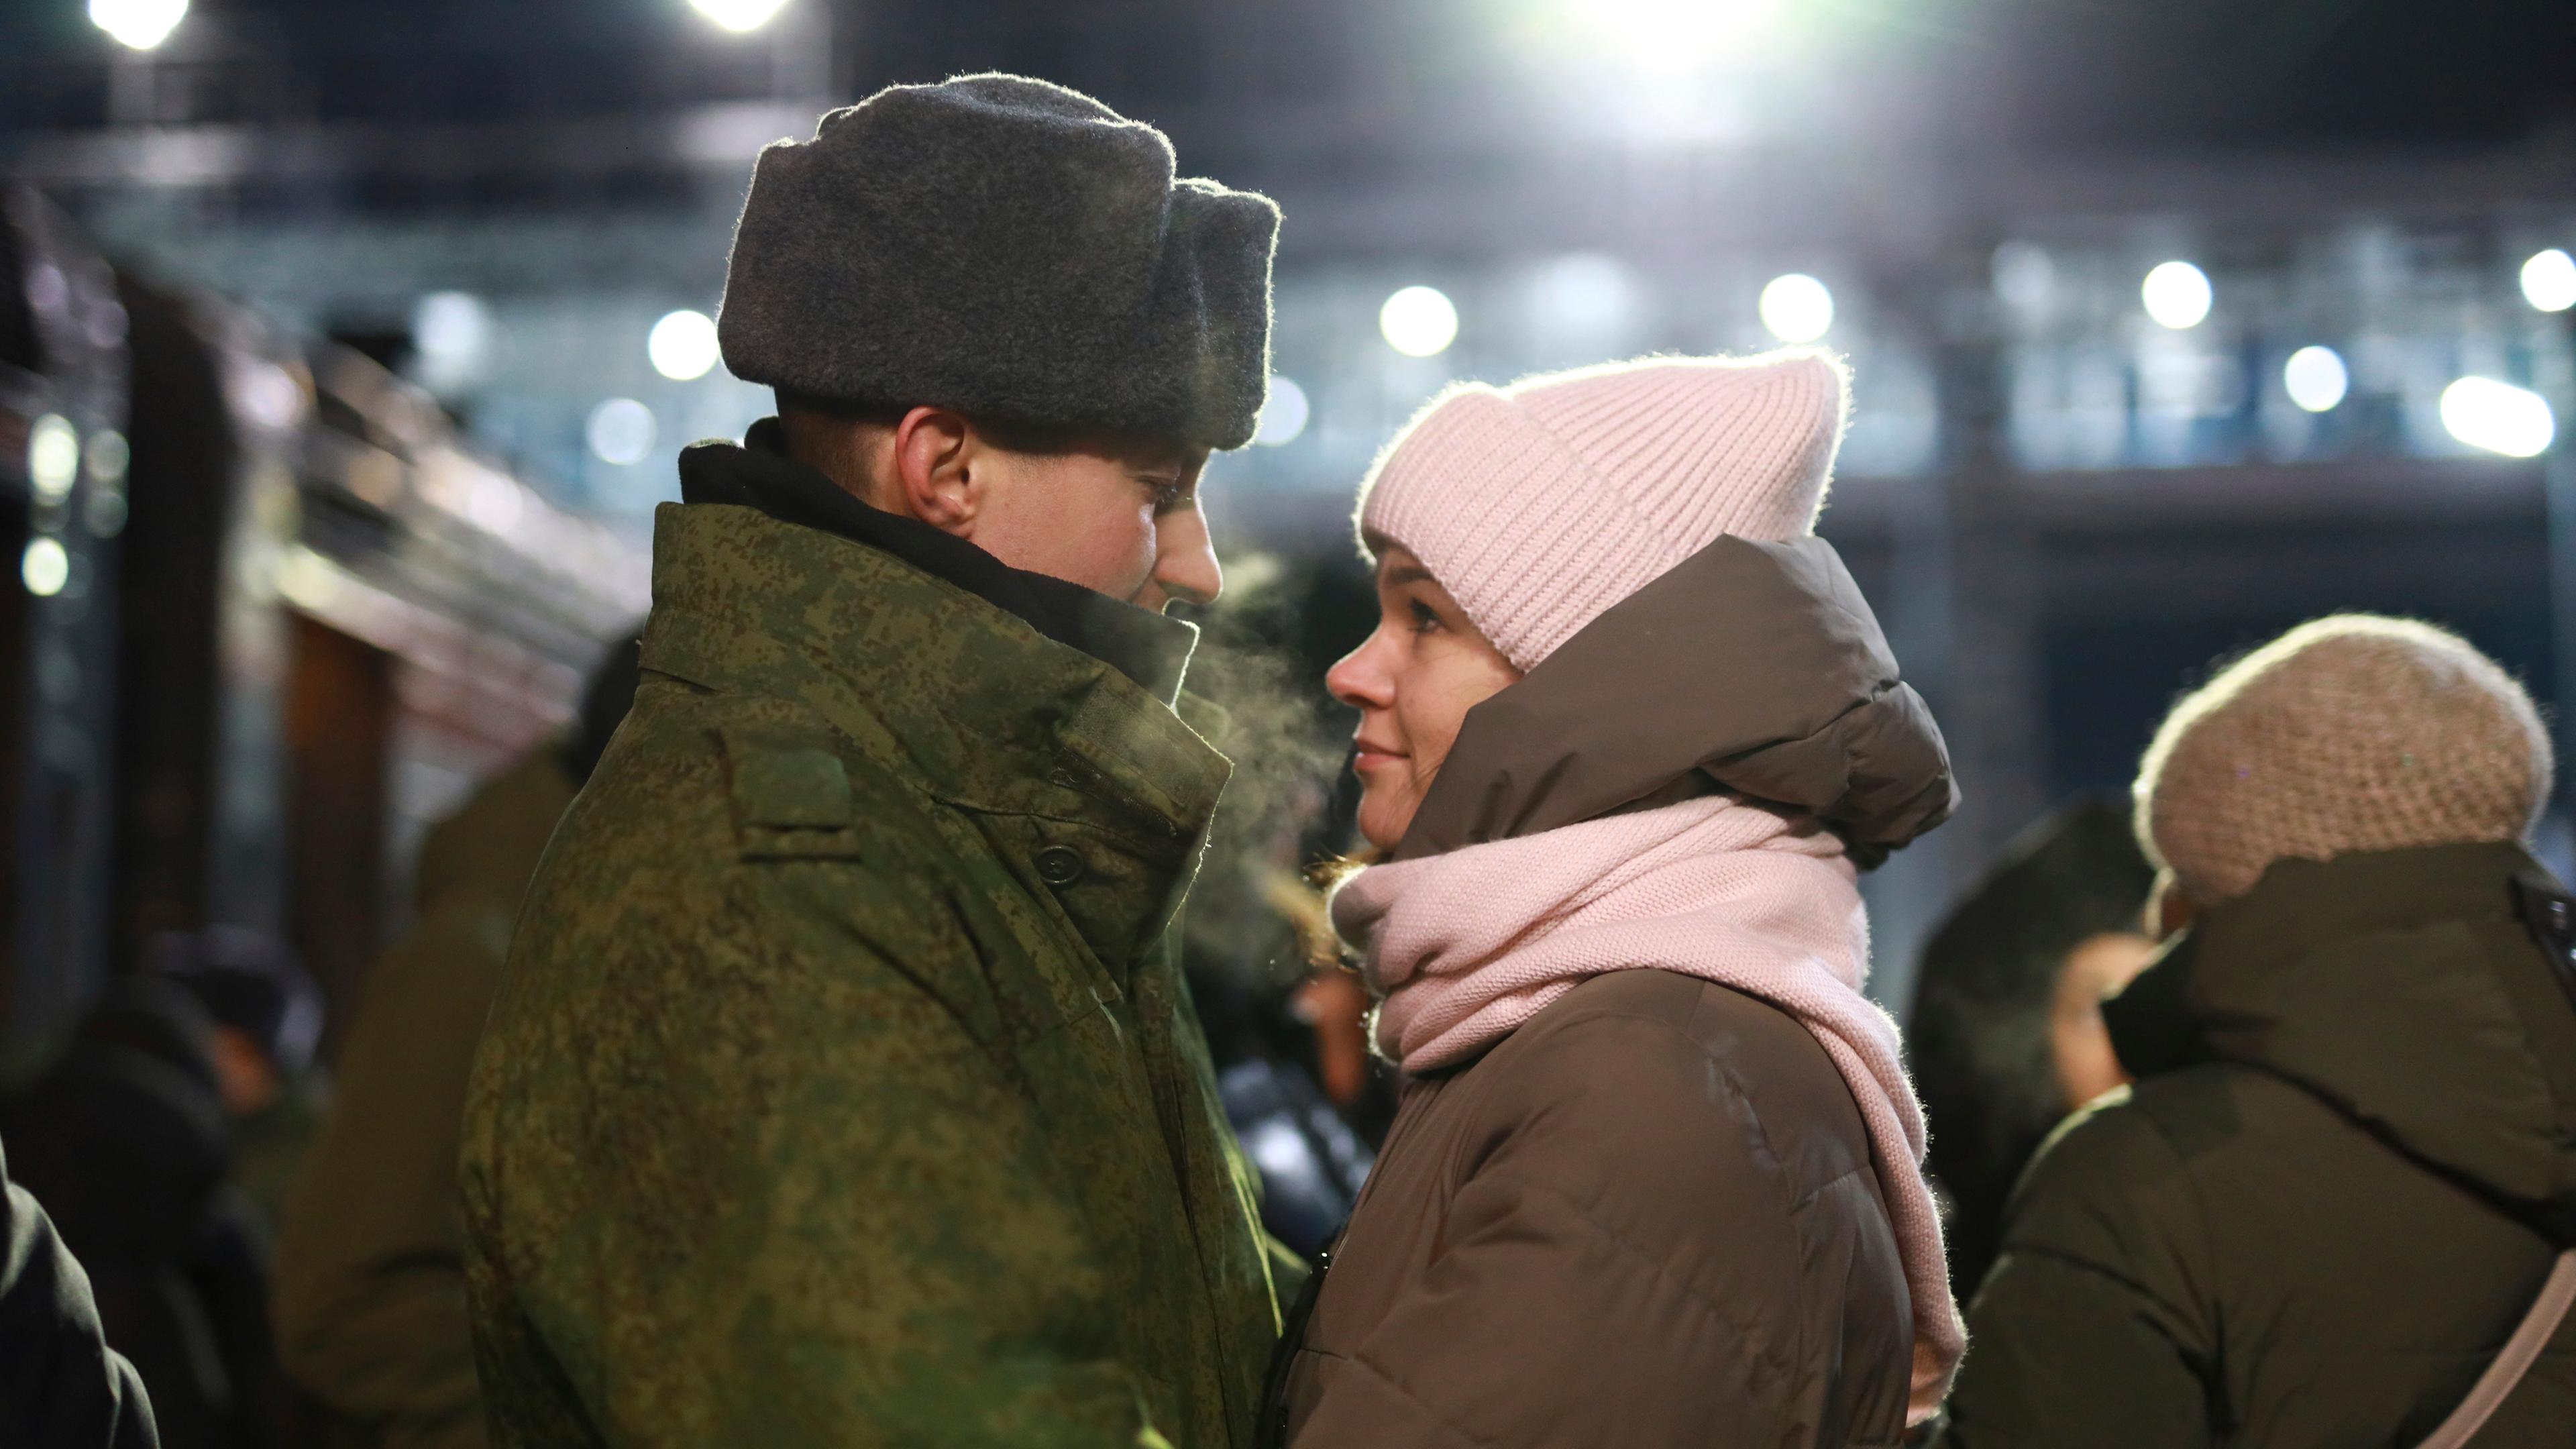 Russischer Soldat umarmt seine Partnerin an einem Bahngleis.